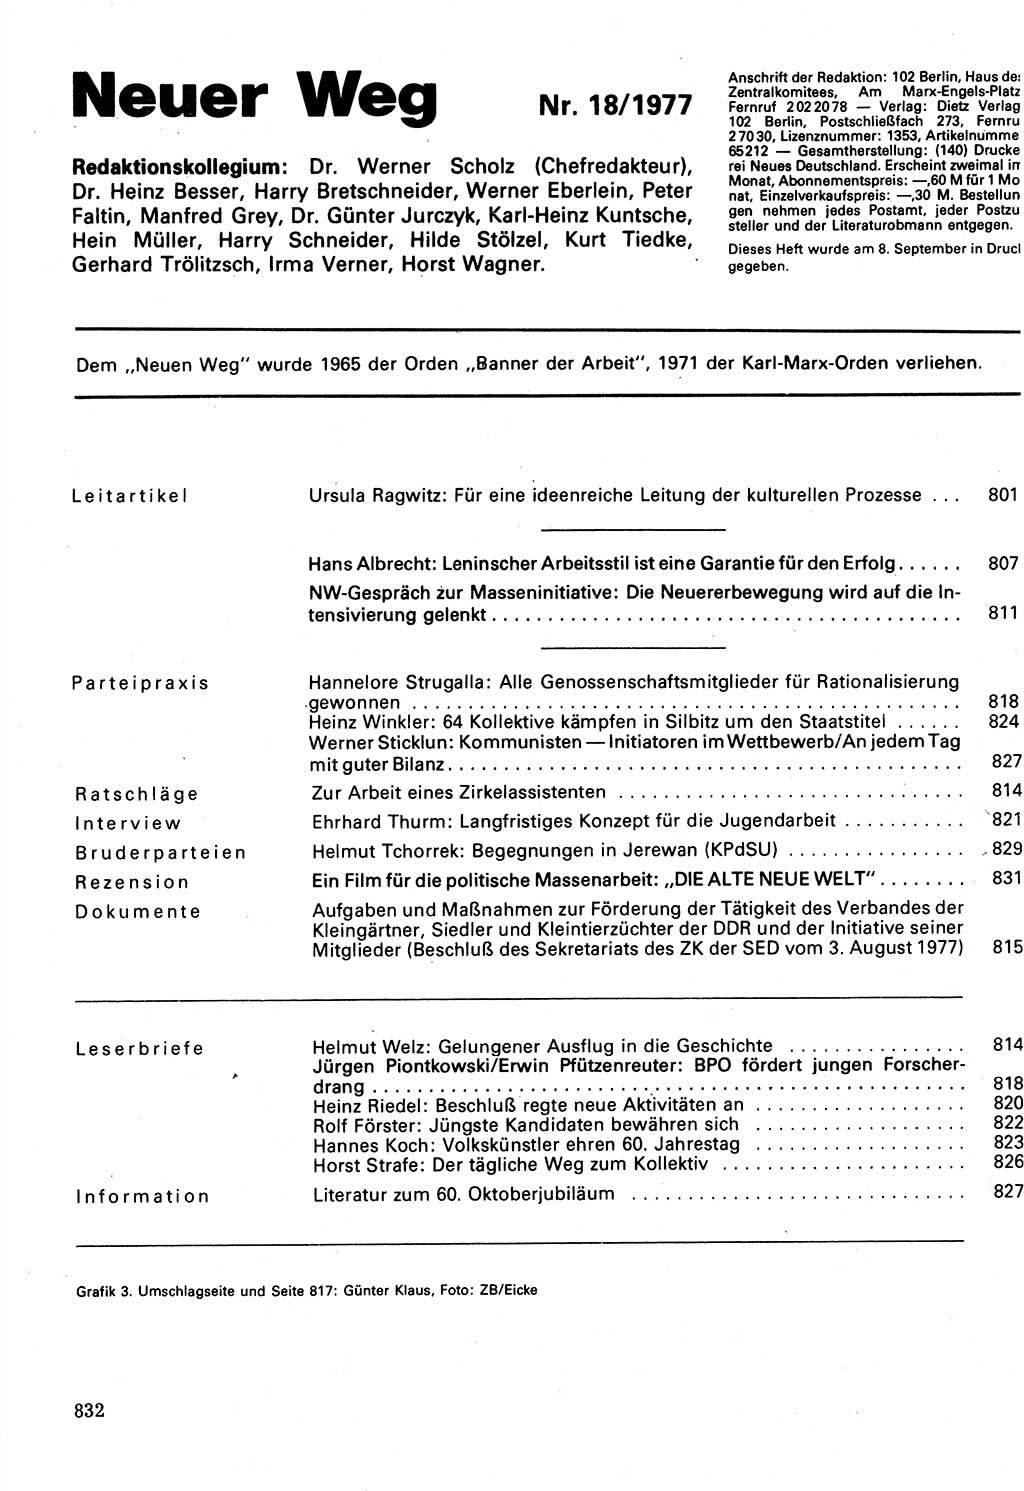 Neuer Weg (NW), Organ des Zentralkomitees (ZK) der SED (Sozialistische Einheitspartei Deutschlands) für Fragen des Parteilebens, 32. Jahrgang [Deutsche Demokratische Republik (DDR)] 1977, Seite 832 (NW ZK SED DDR 1977, S. 832)